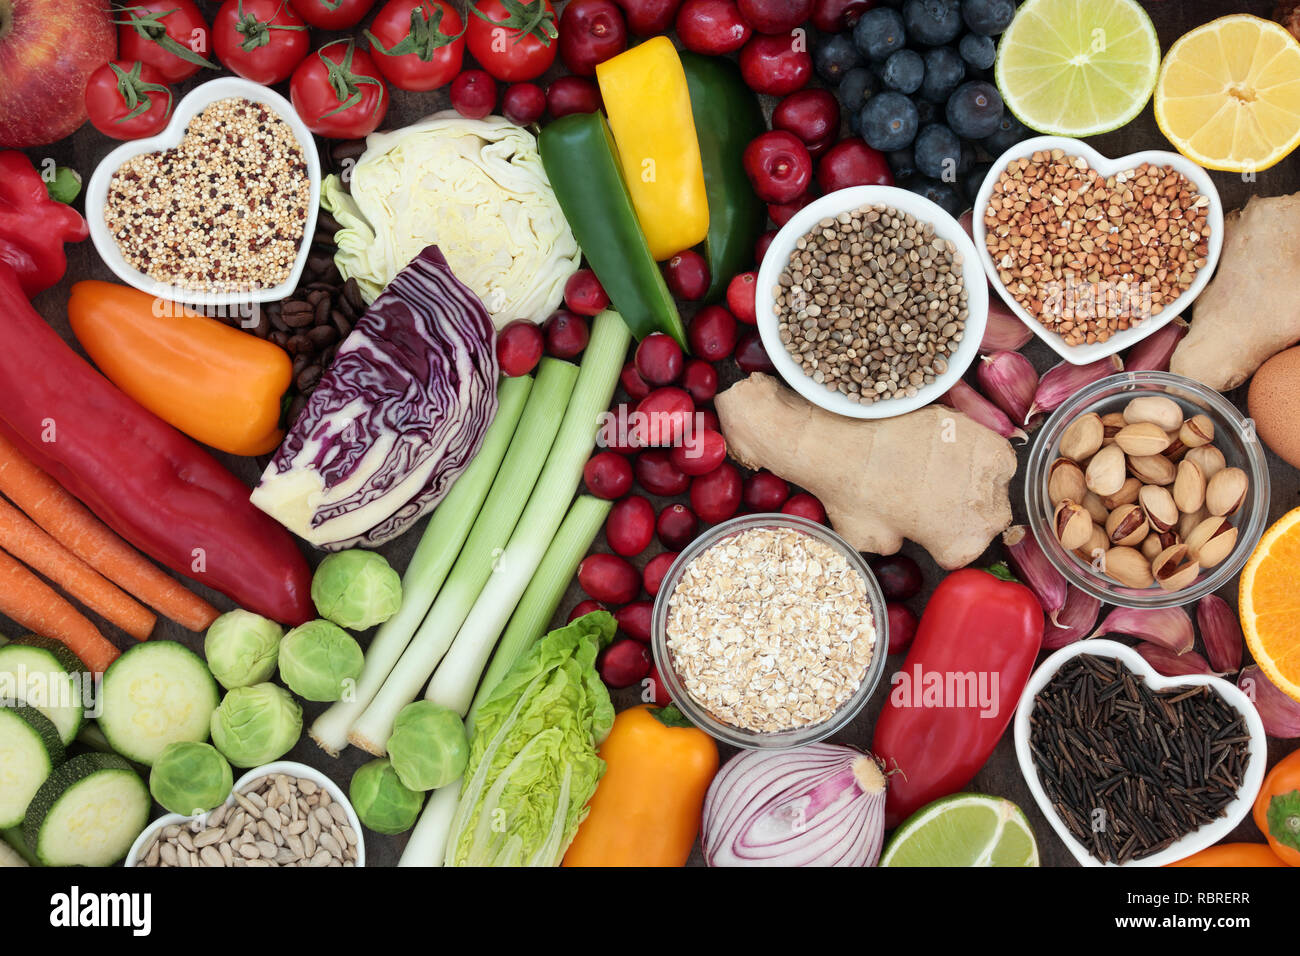 Super Food Konzept für eine gesunde Ernährung mit Samen, Nüsse, Obst, Gemüse, Getreide, Kräuter, und Körner. Lebensmittel, die einen hohen Gehalt an Antioxidantien, Protein, Anthocyane, Stockfoto